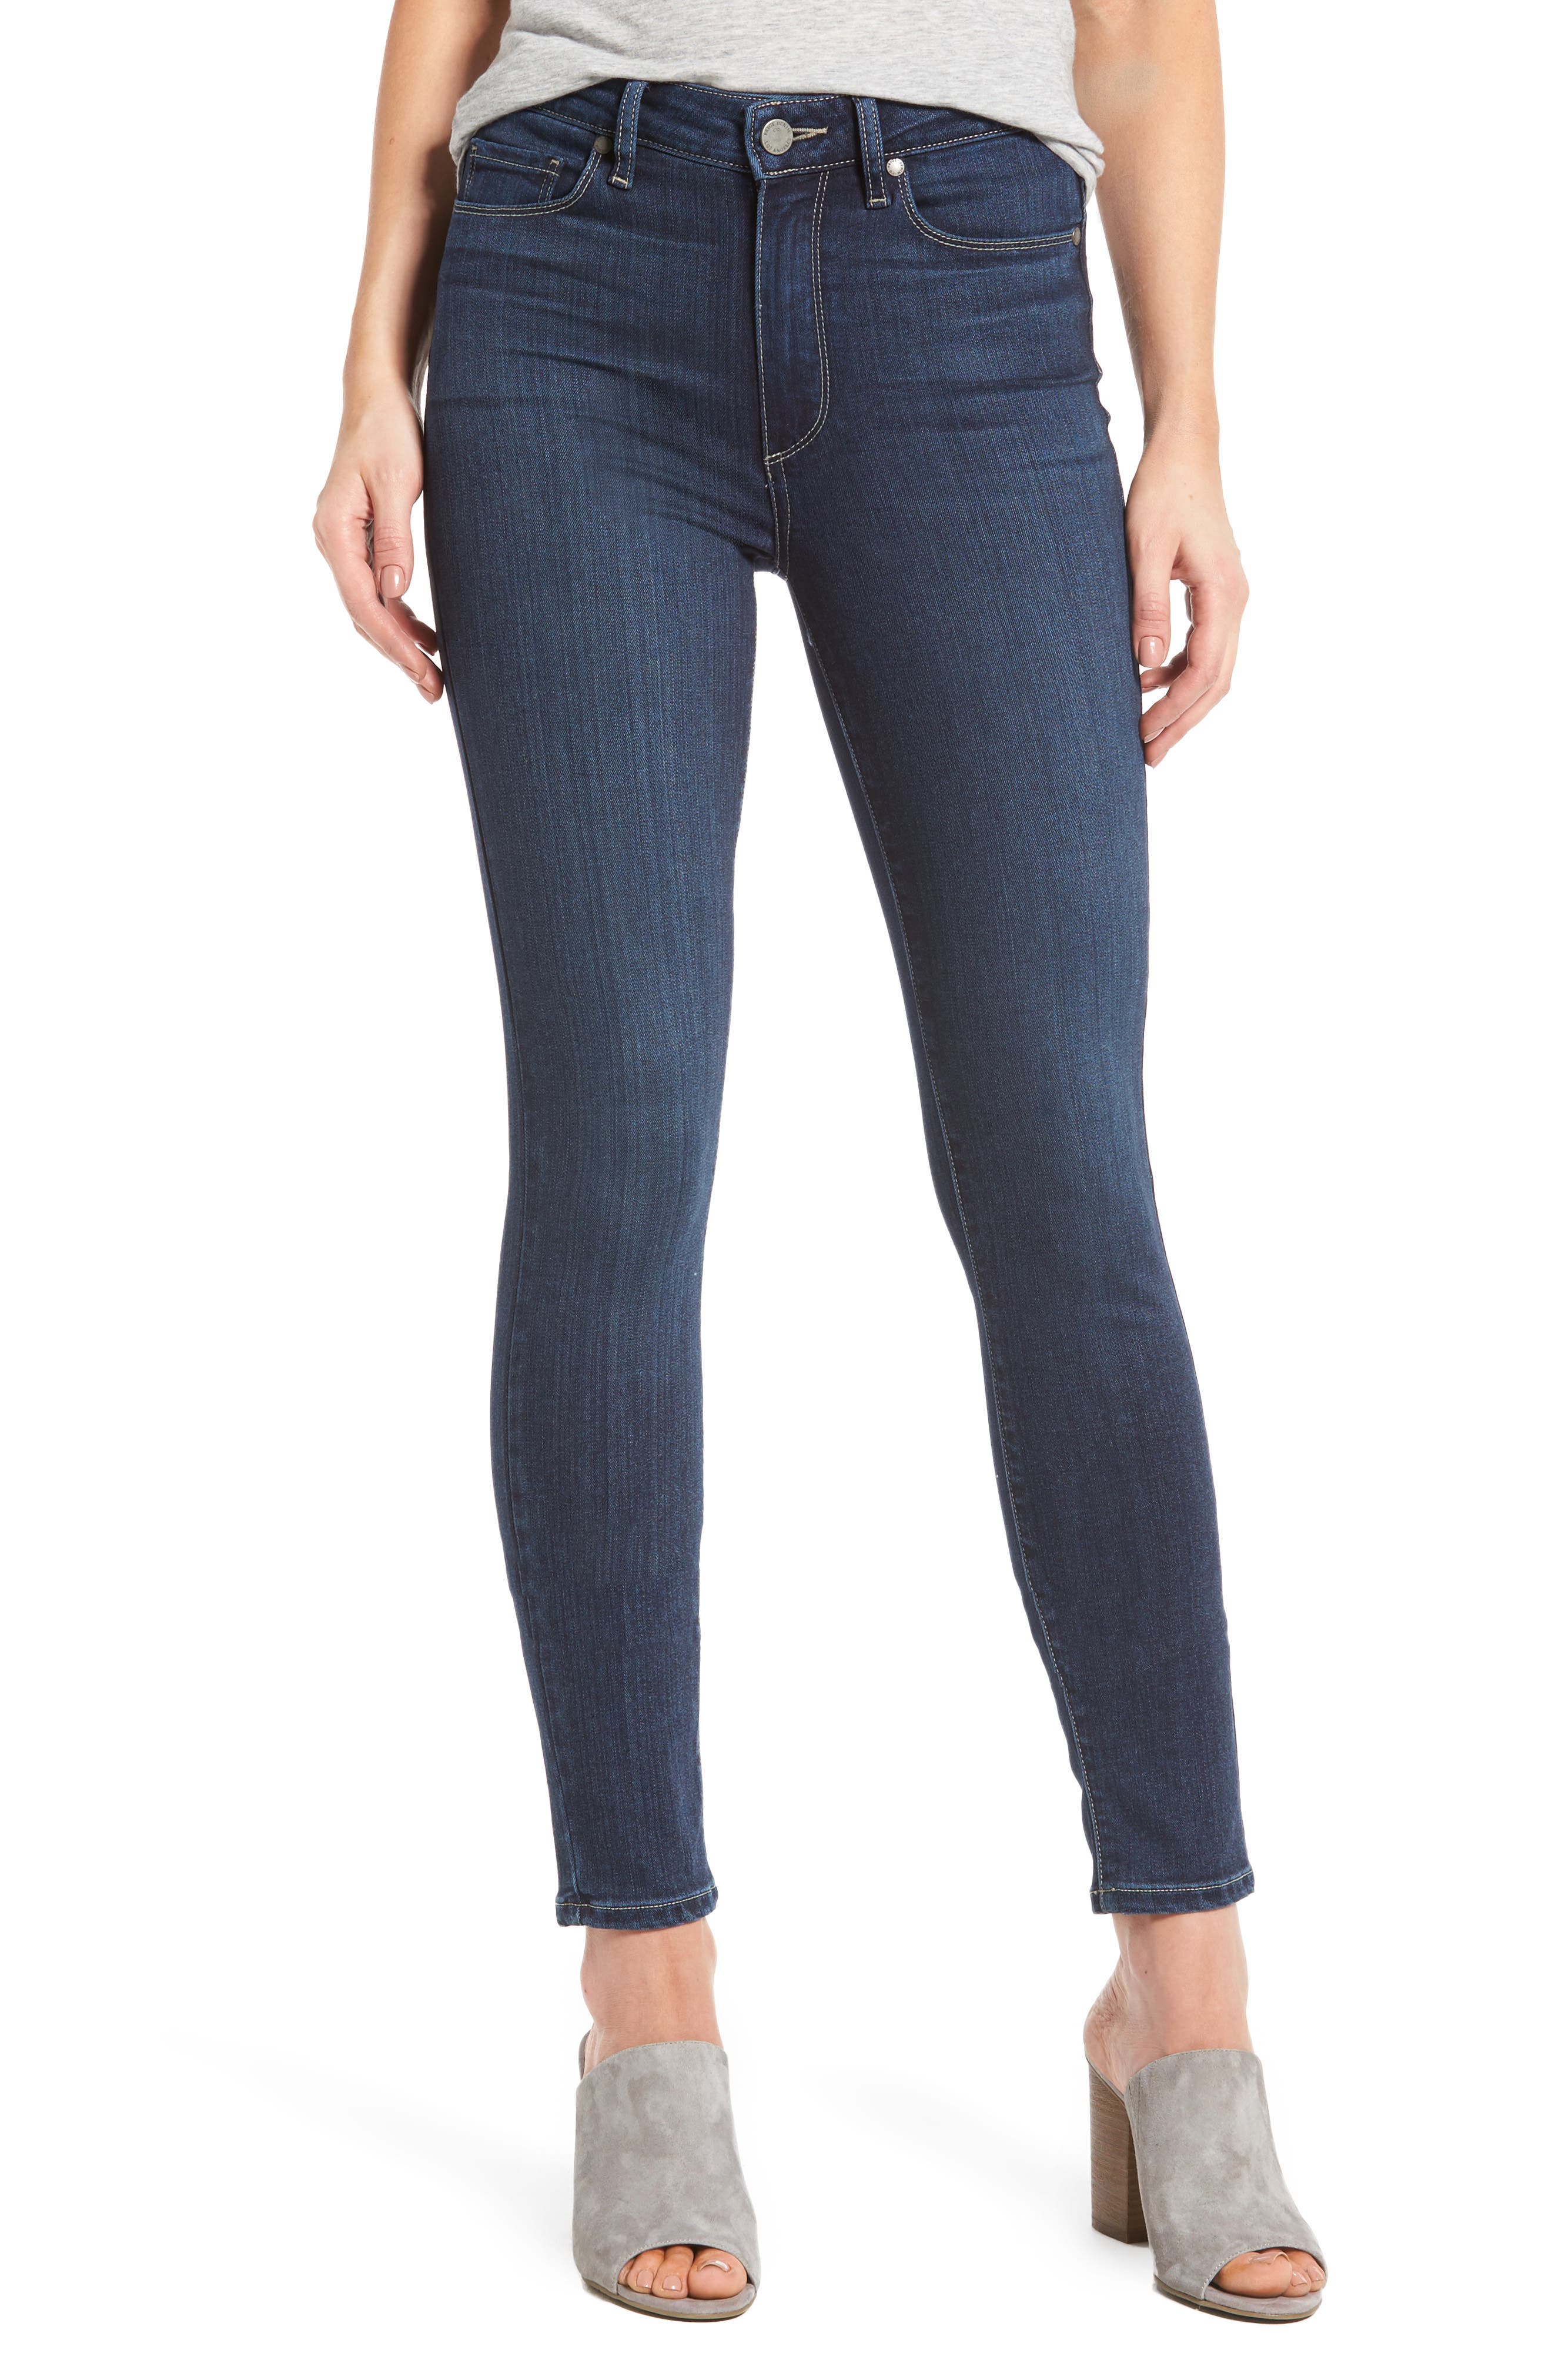 women's blue jeans on sale